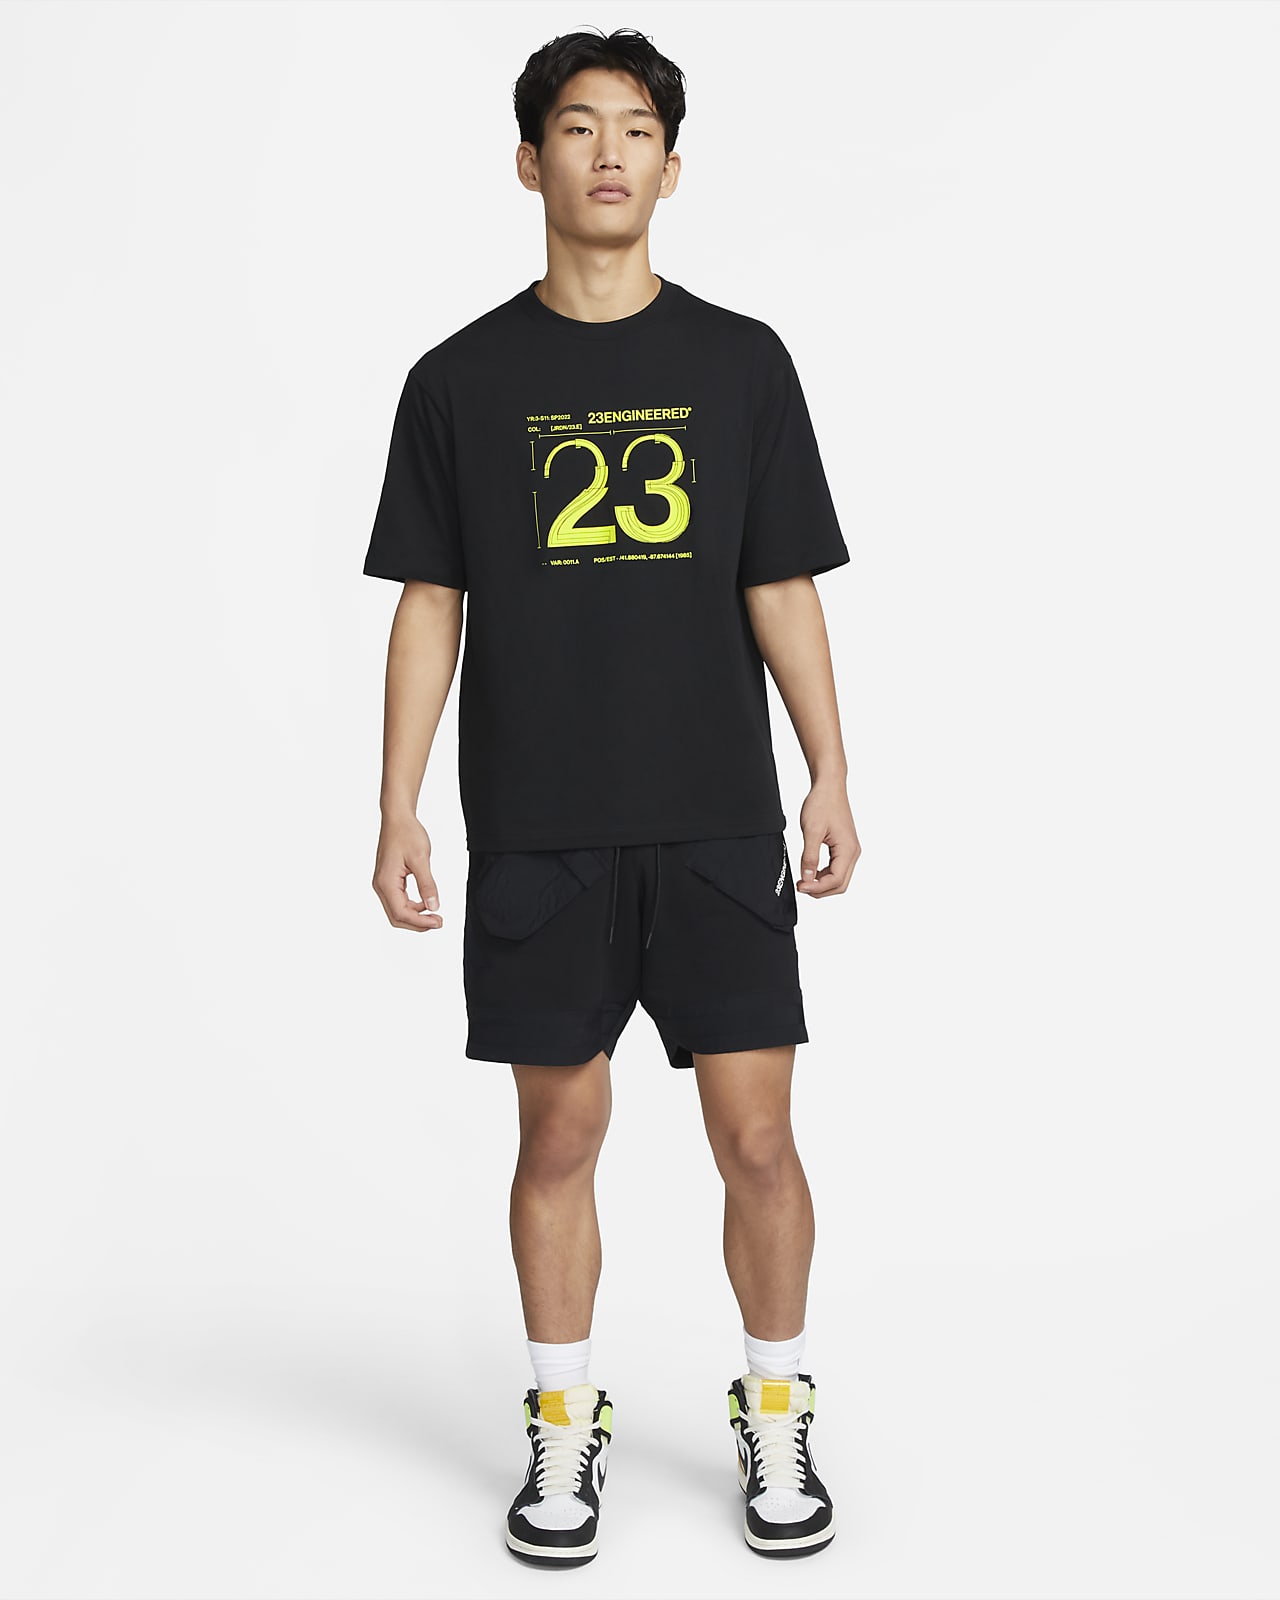 Jordan 23 Engineered Men's T-Shirt. Nike JP